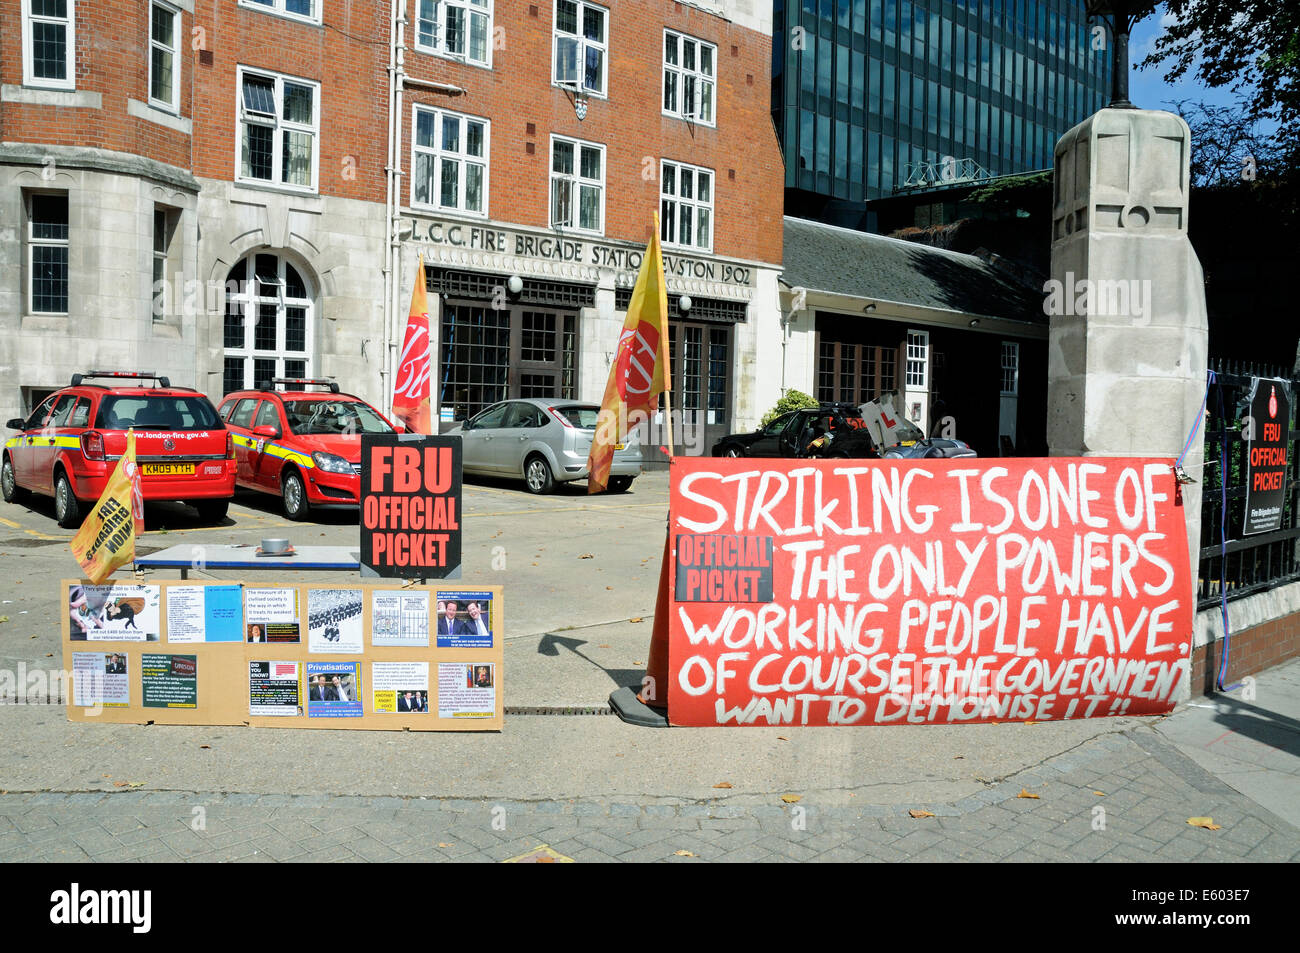 Offical FBU picket line segni fuori dalla stazione dei vigili del fuoco in Euston Road, Londra, Inghilterra Gran Bretagna Sabato 9 agosto 2014. Foto Stock